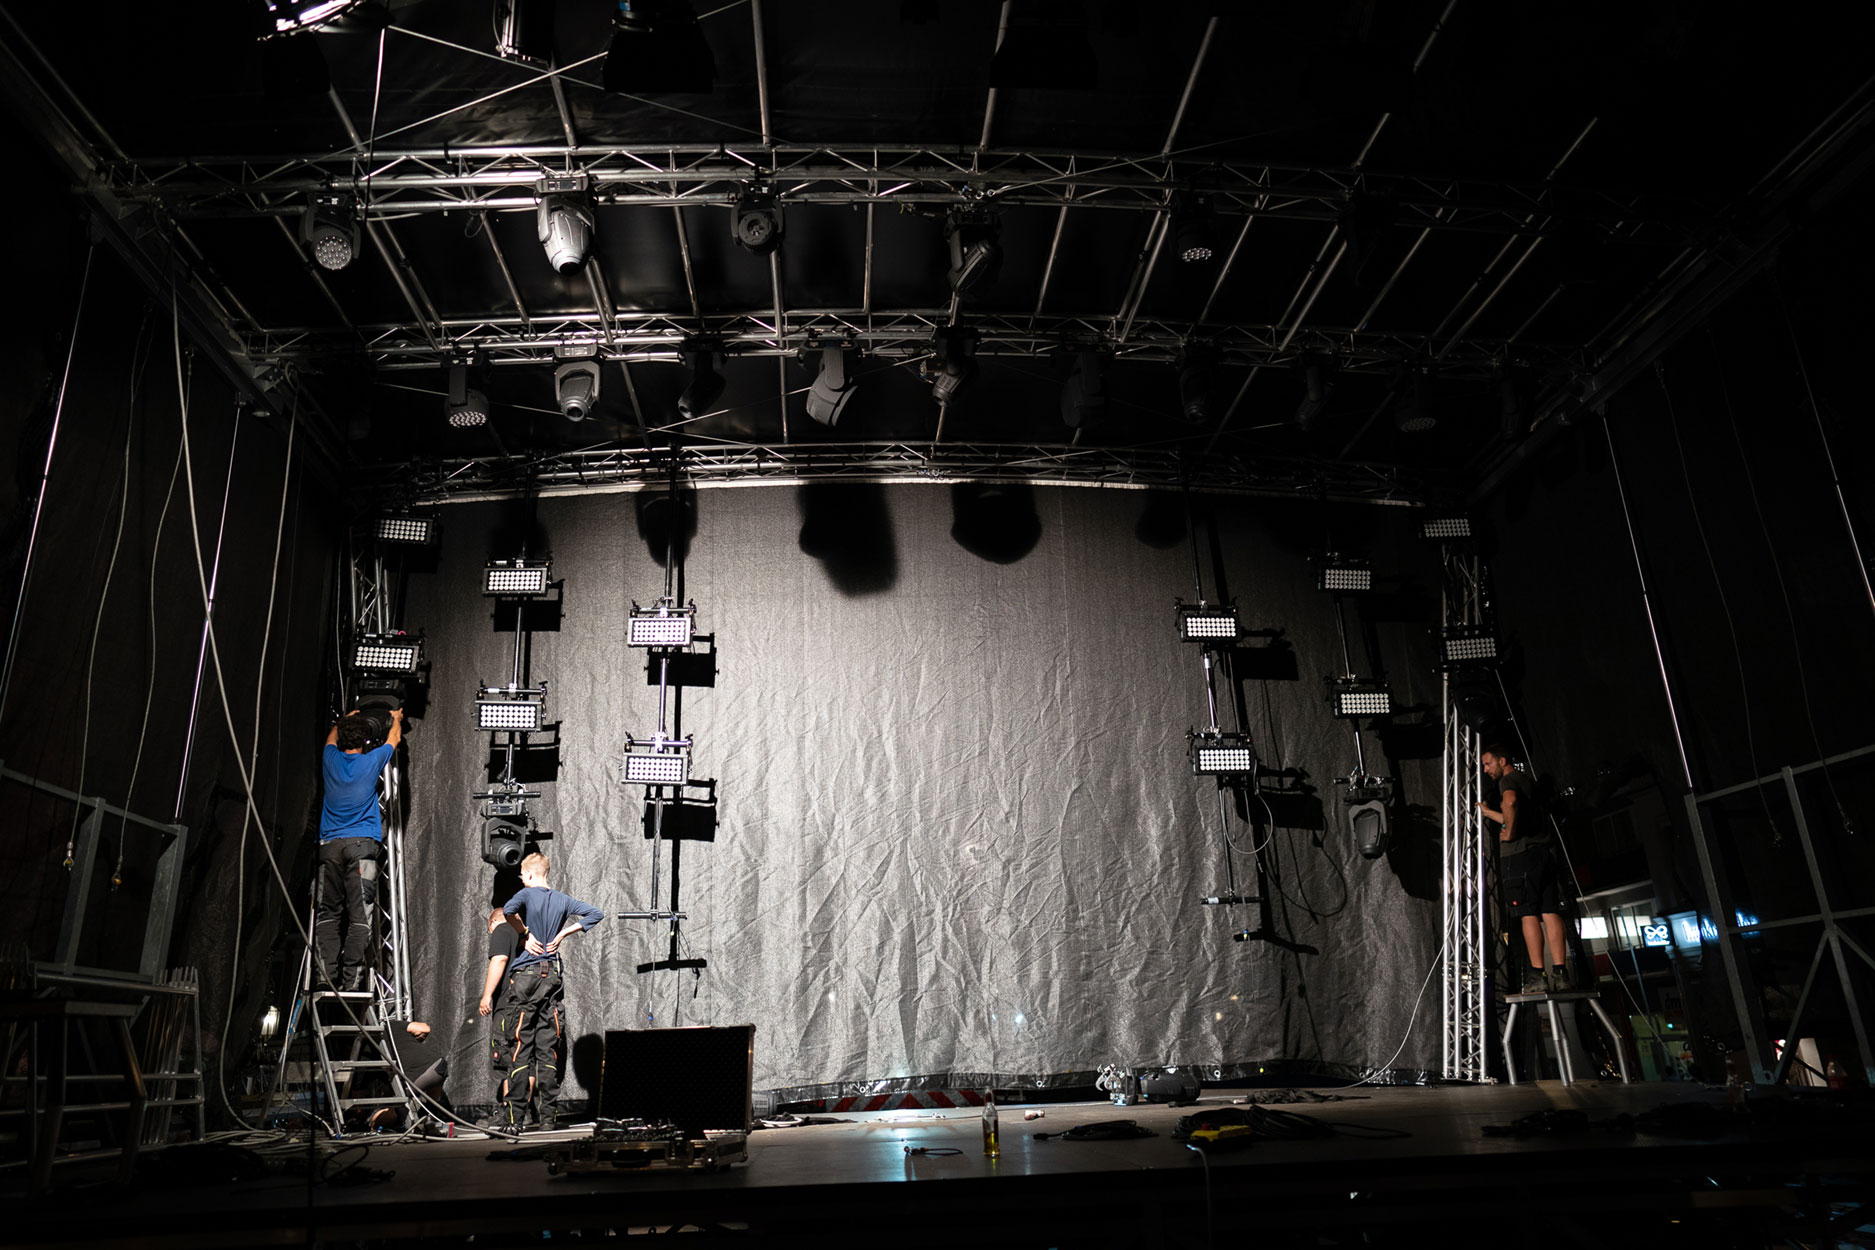 Zwei Bühnentechniker installieren Flutscheinwerfer oder Blinder auf einer Bühne.